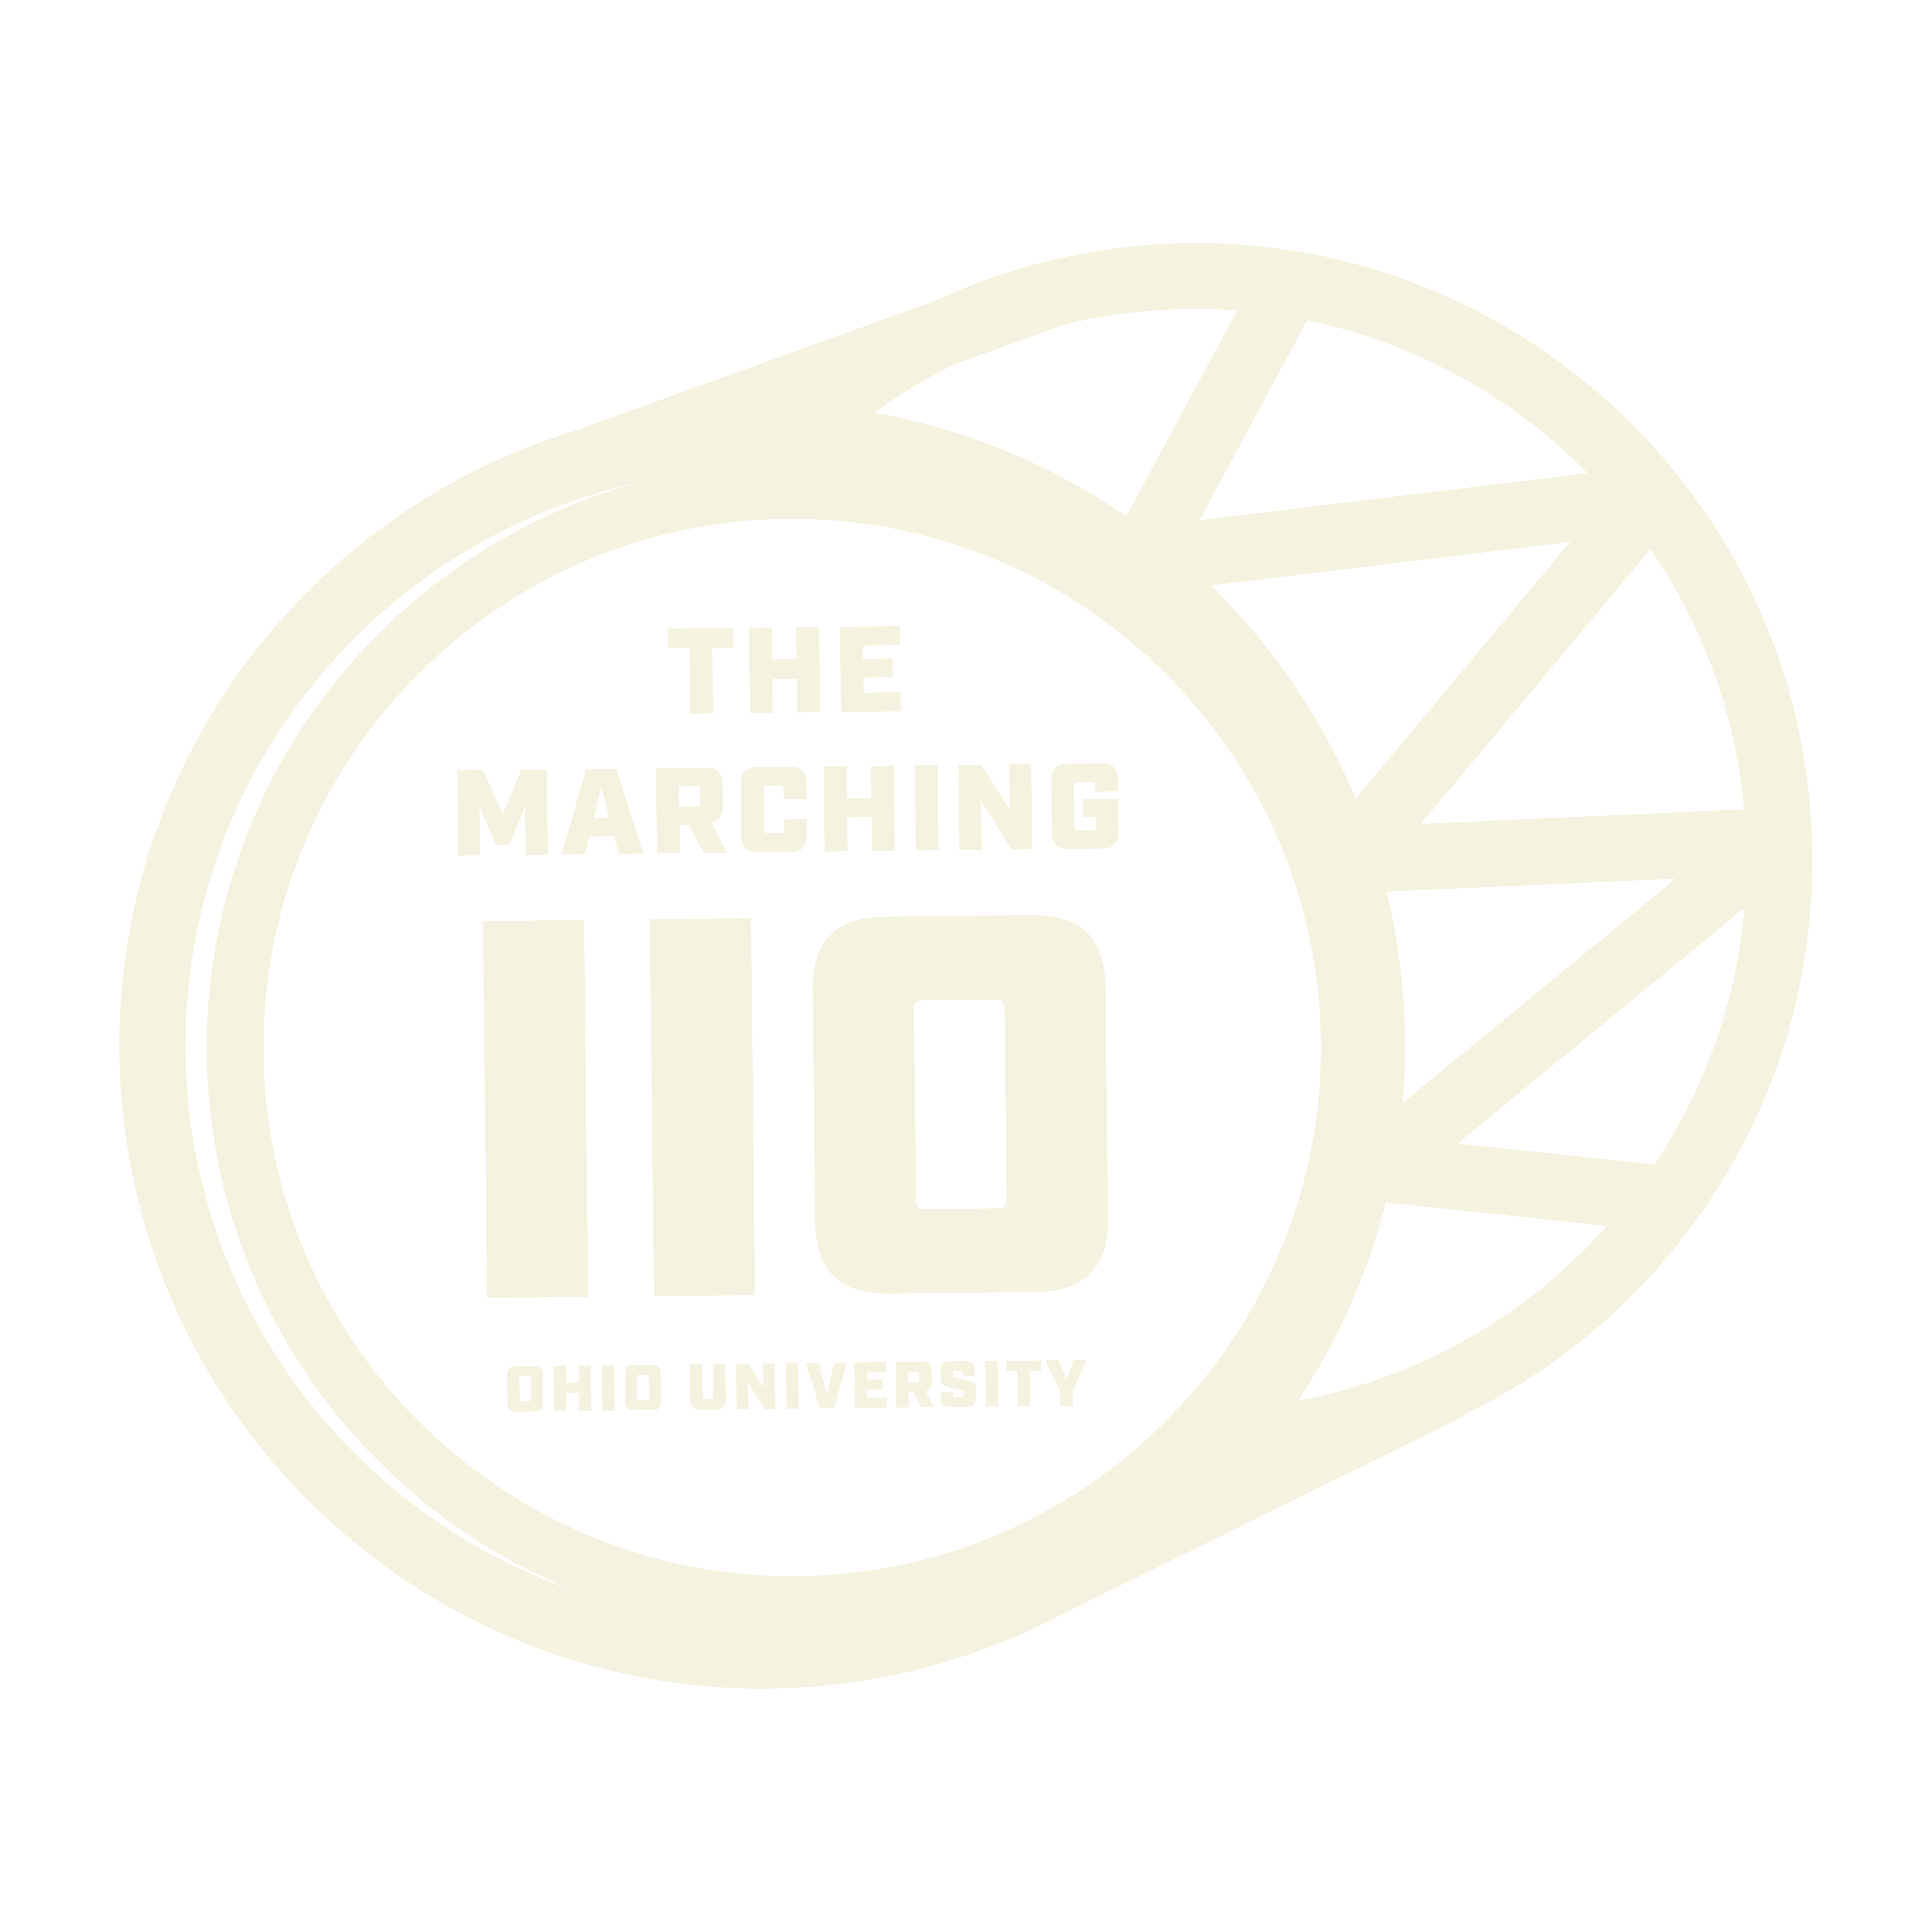 The Marching 110 Ohio University badge